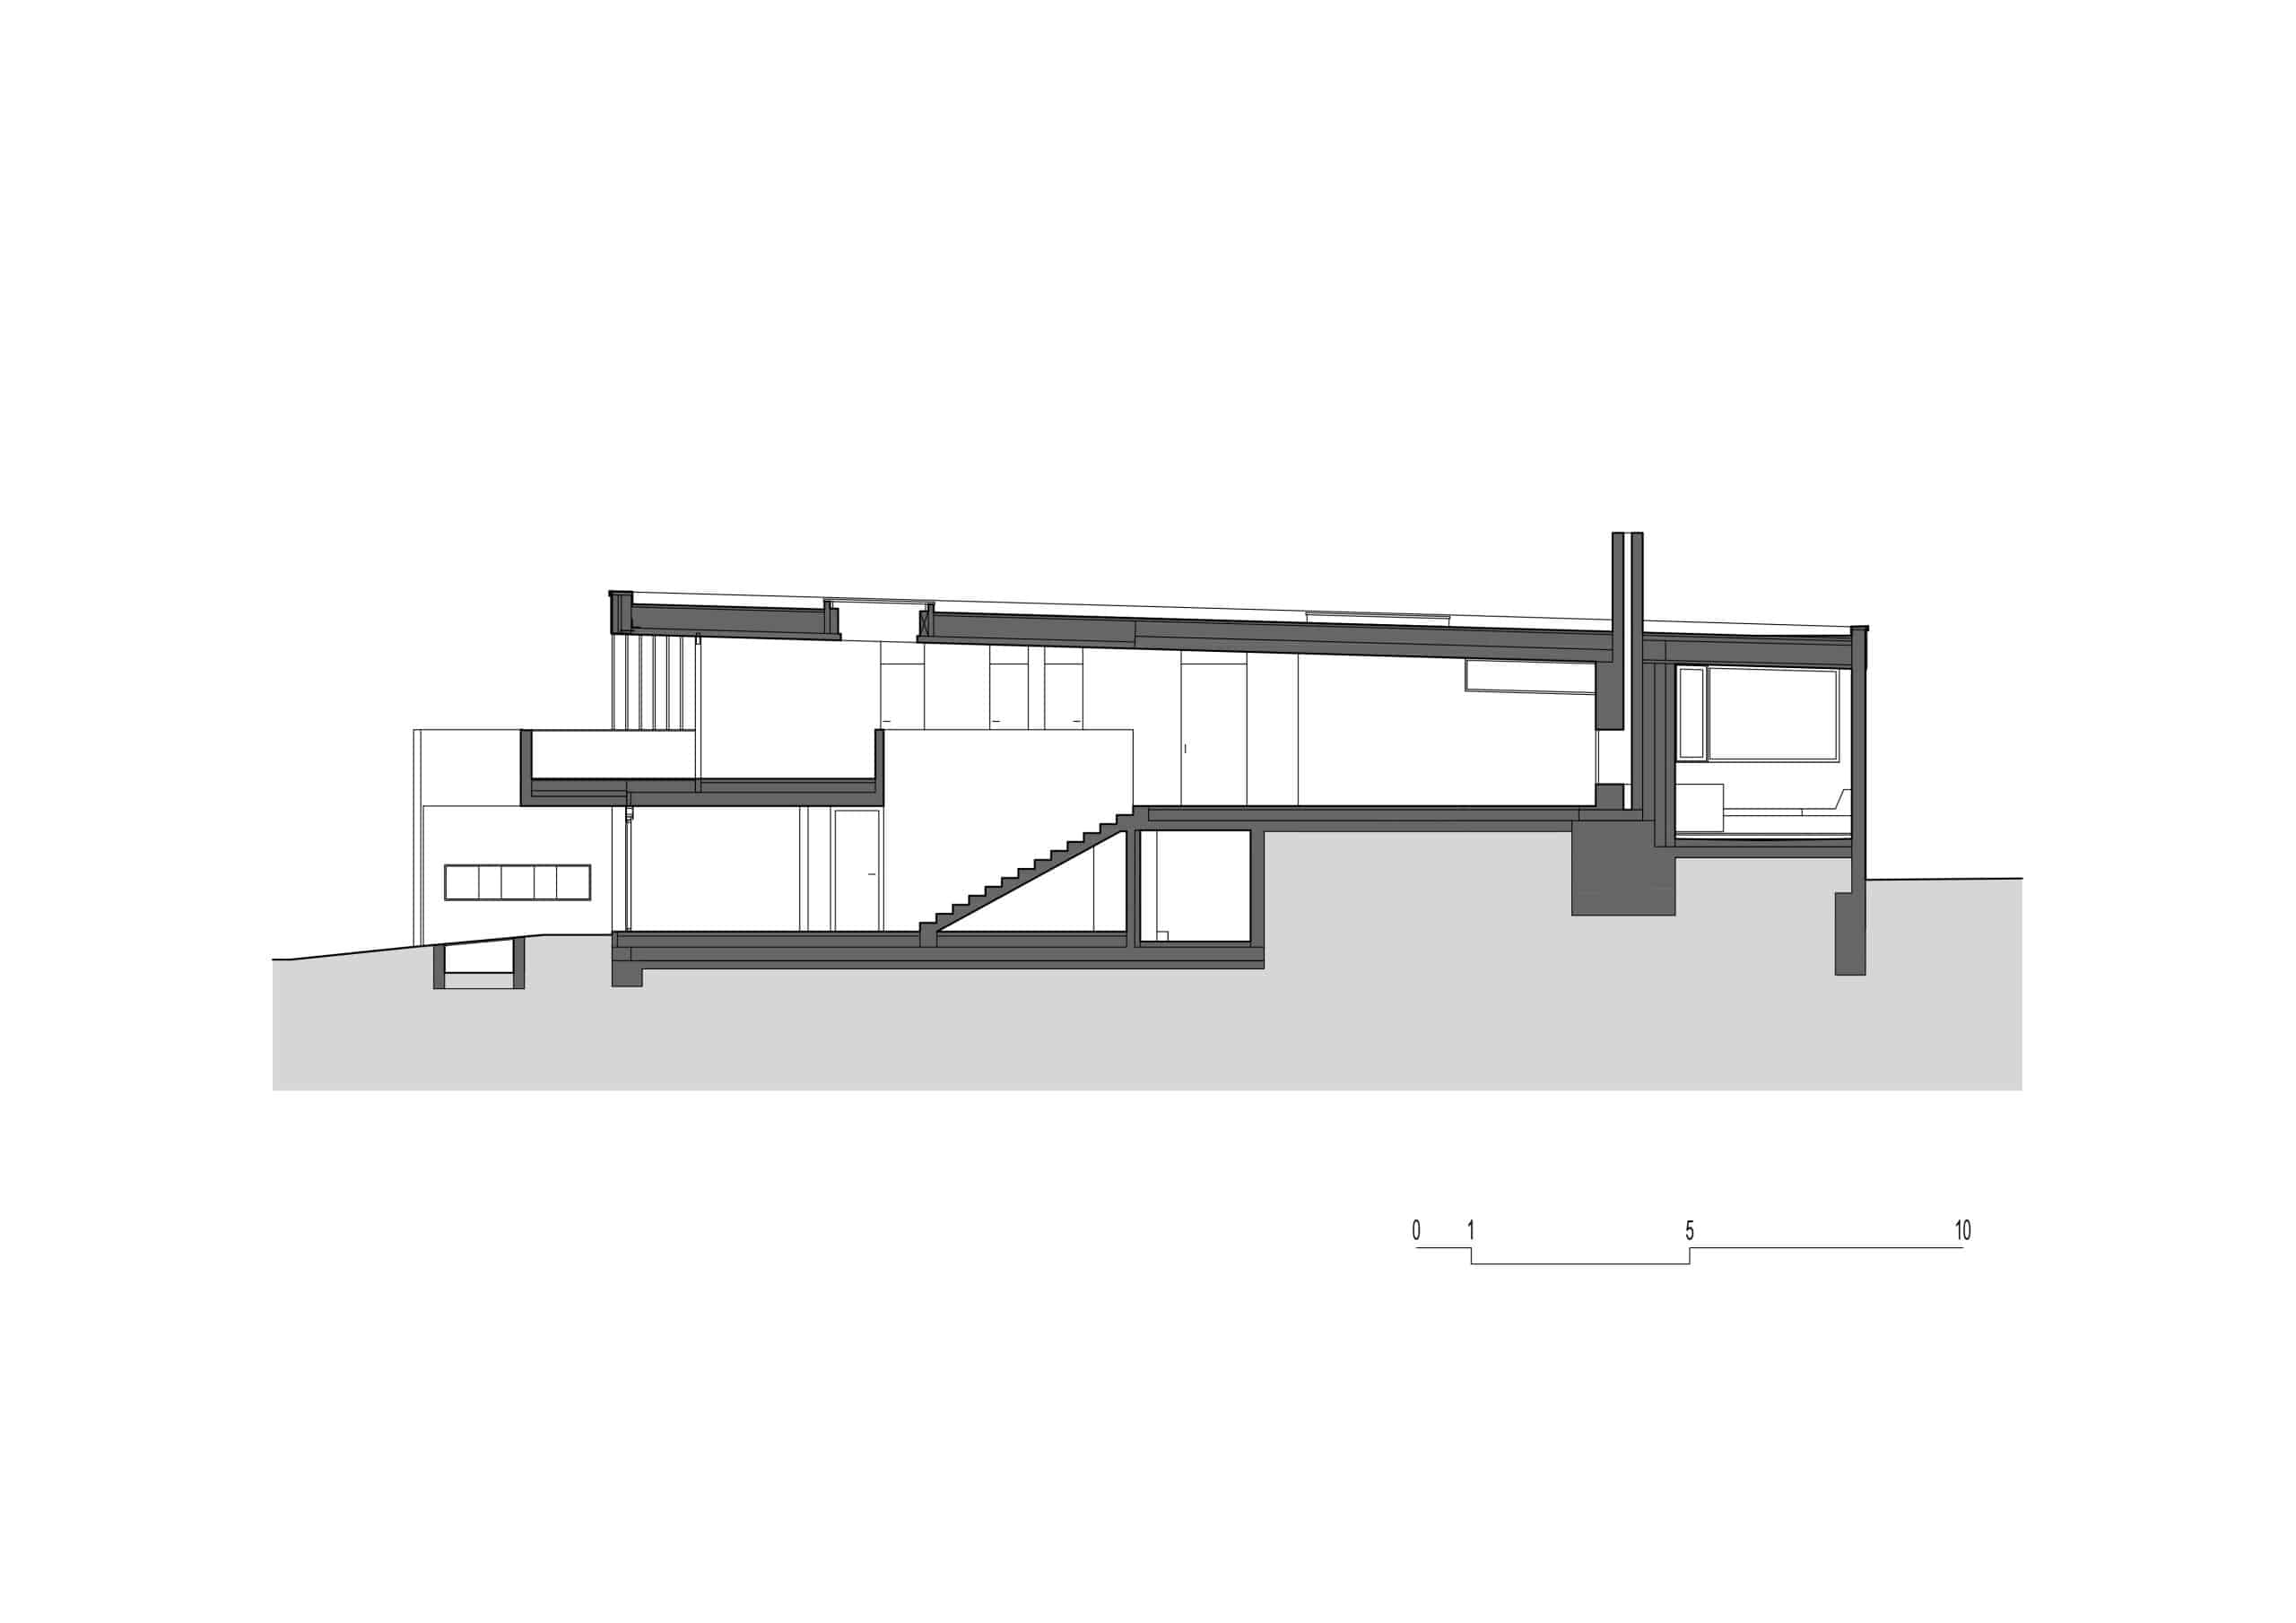 Querschnitt Plan von einer Seite der Villa, schwarz-weiß